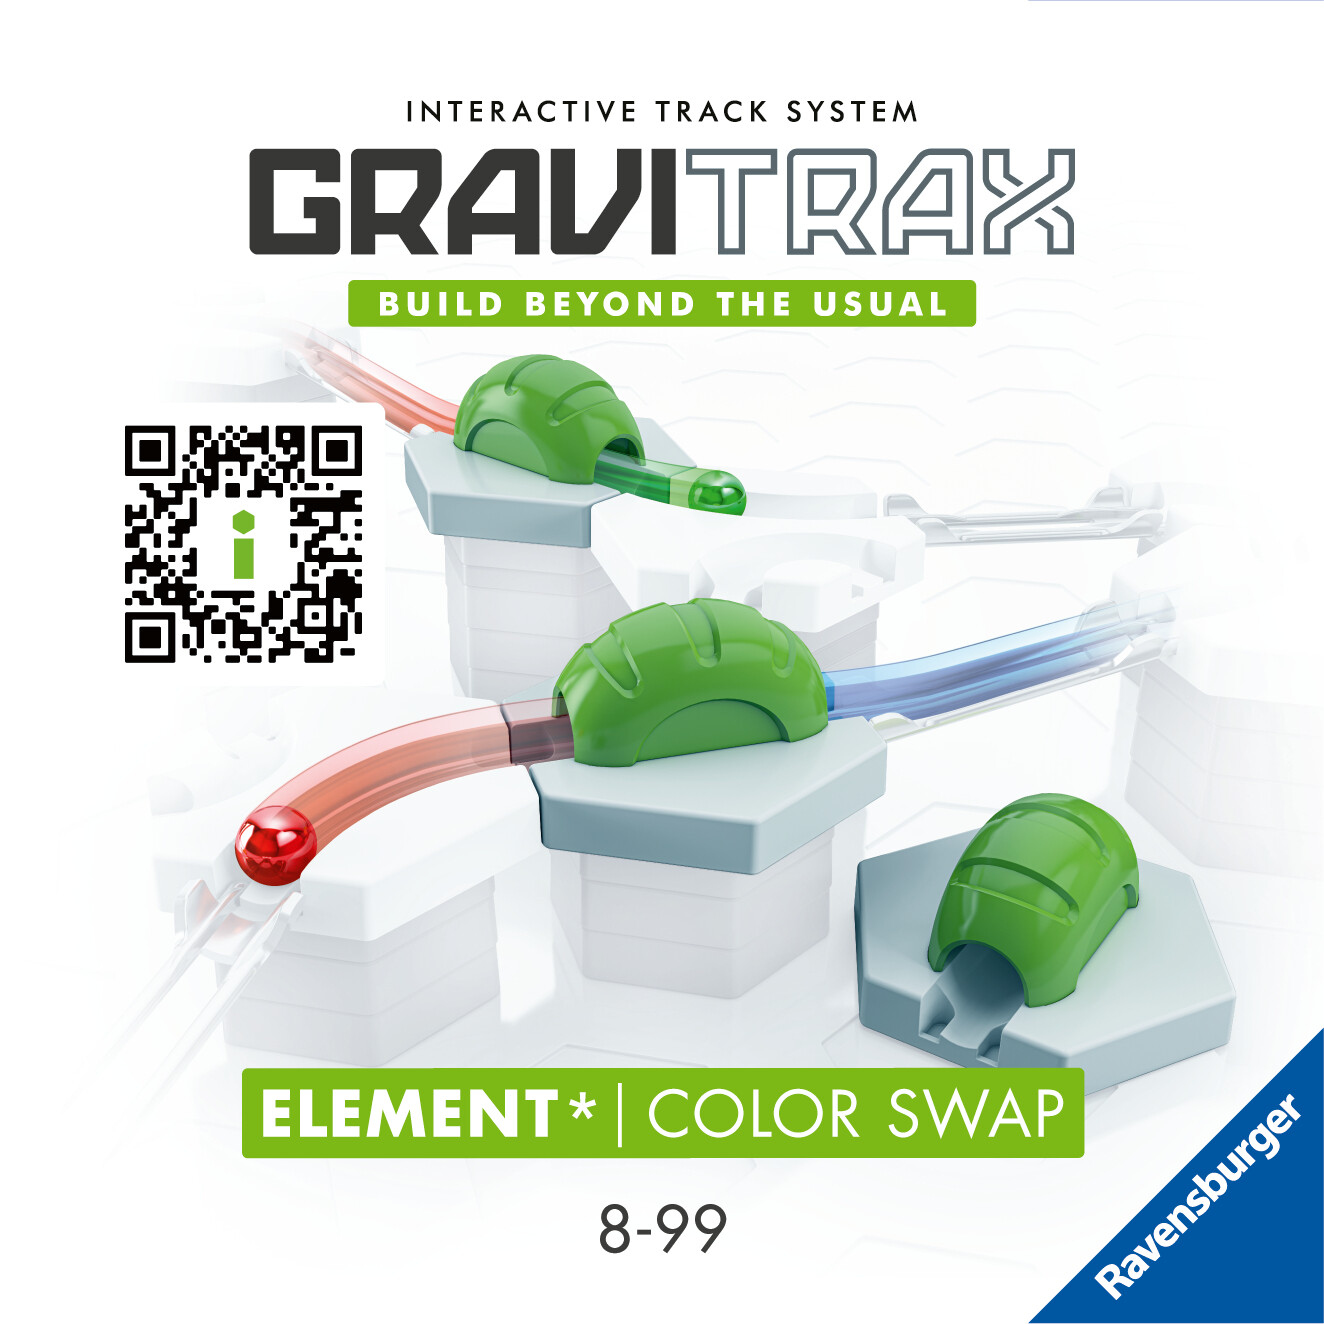 Ravensburger gravitrax color swap, gioco innovativo ed educativo stem, 8+ anni, accessorio - GRAVITRAX